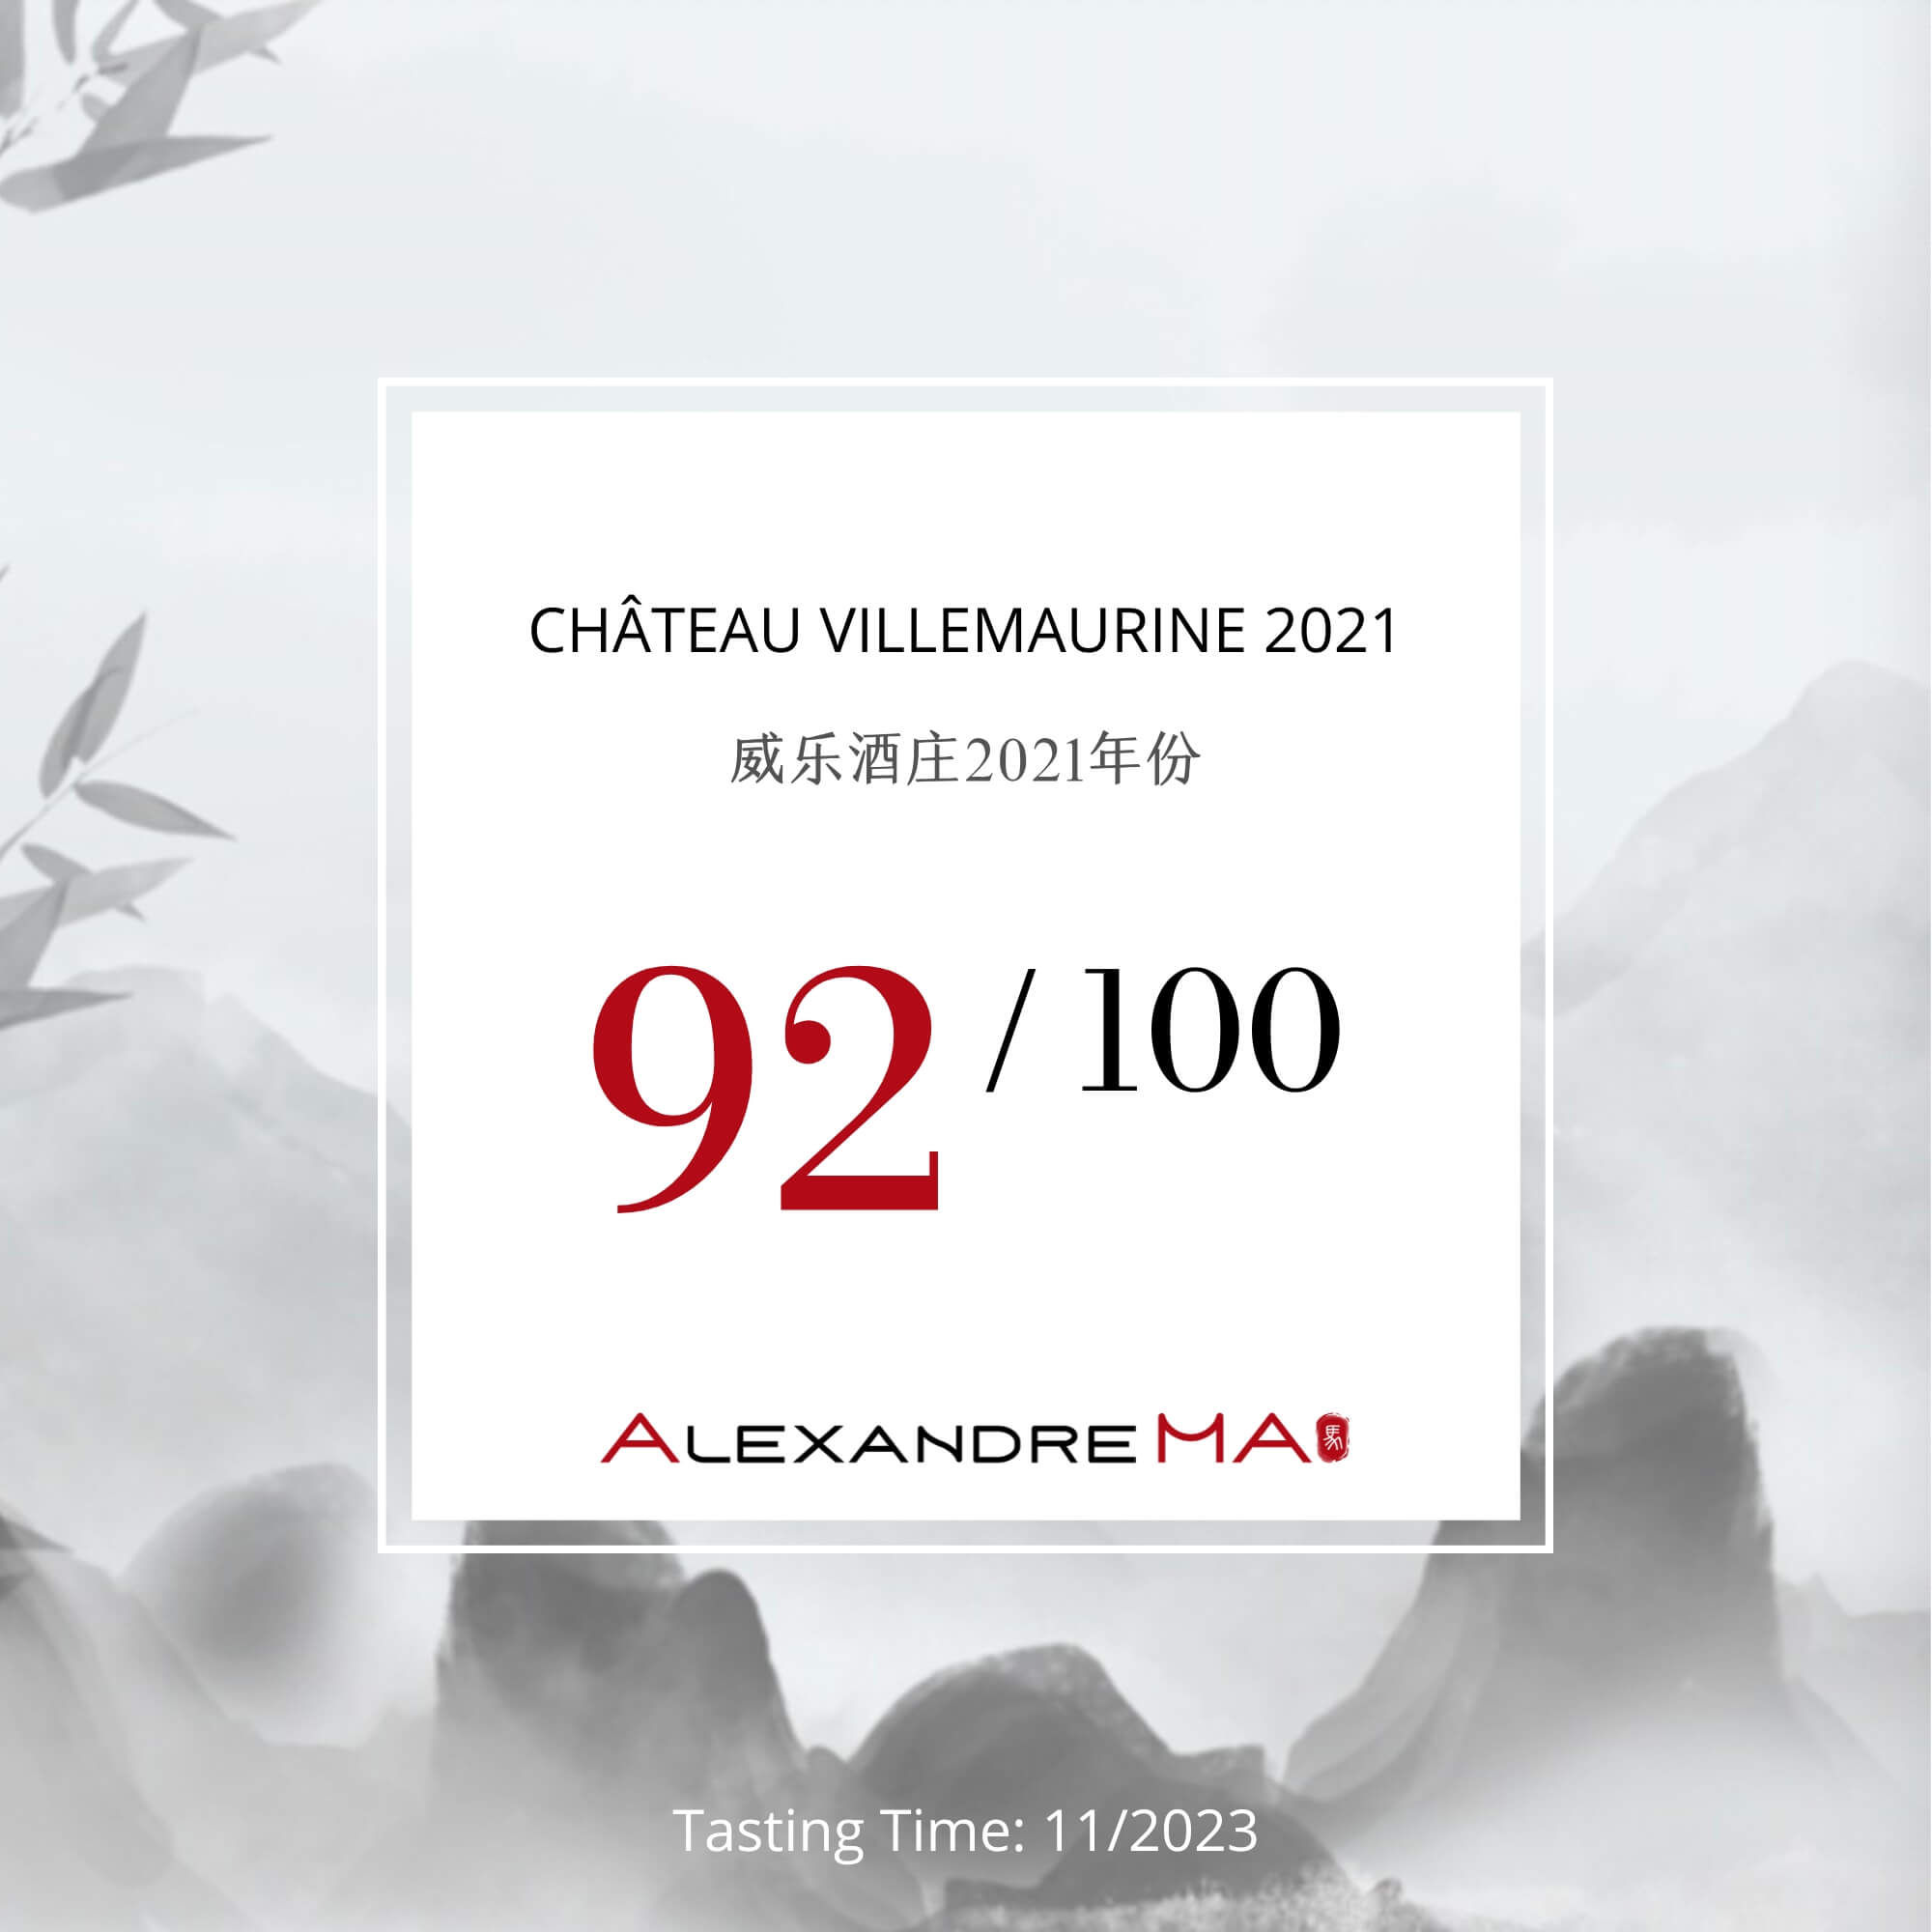 Château Villemaurine 2021 - Alexandre MA